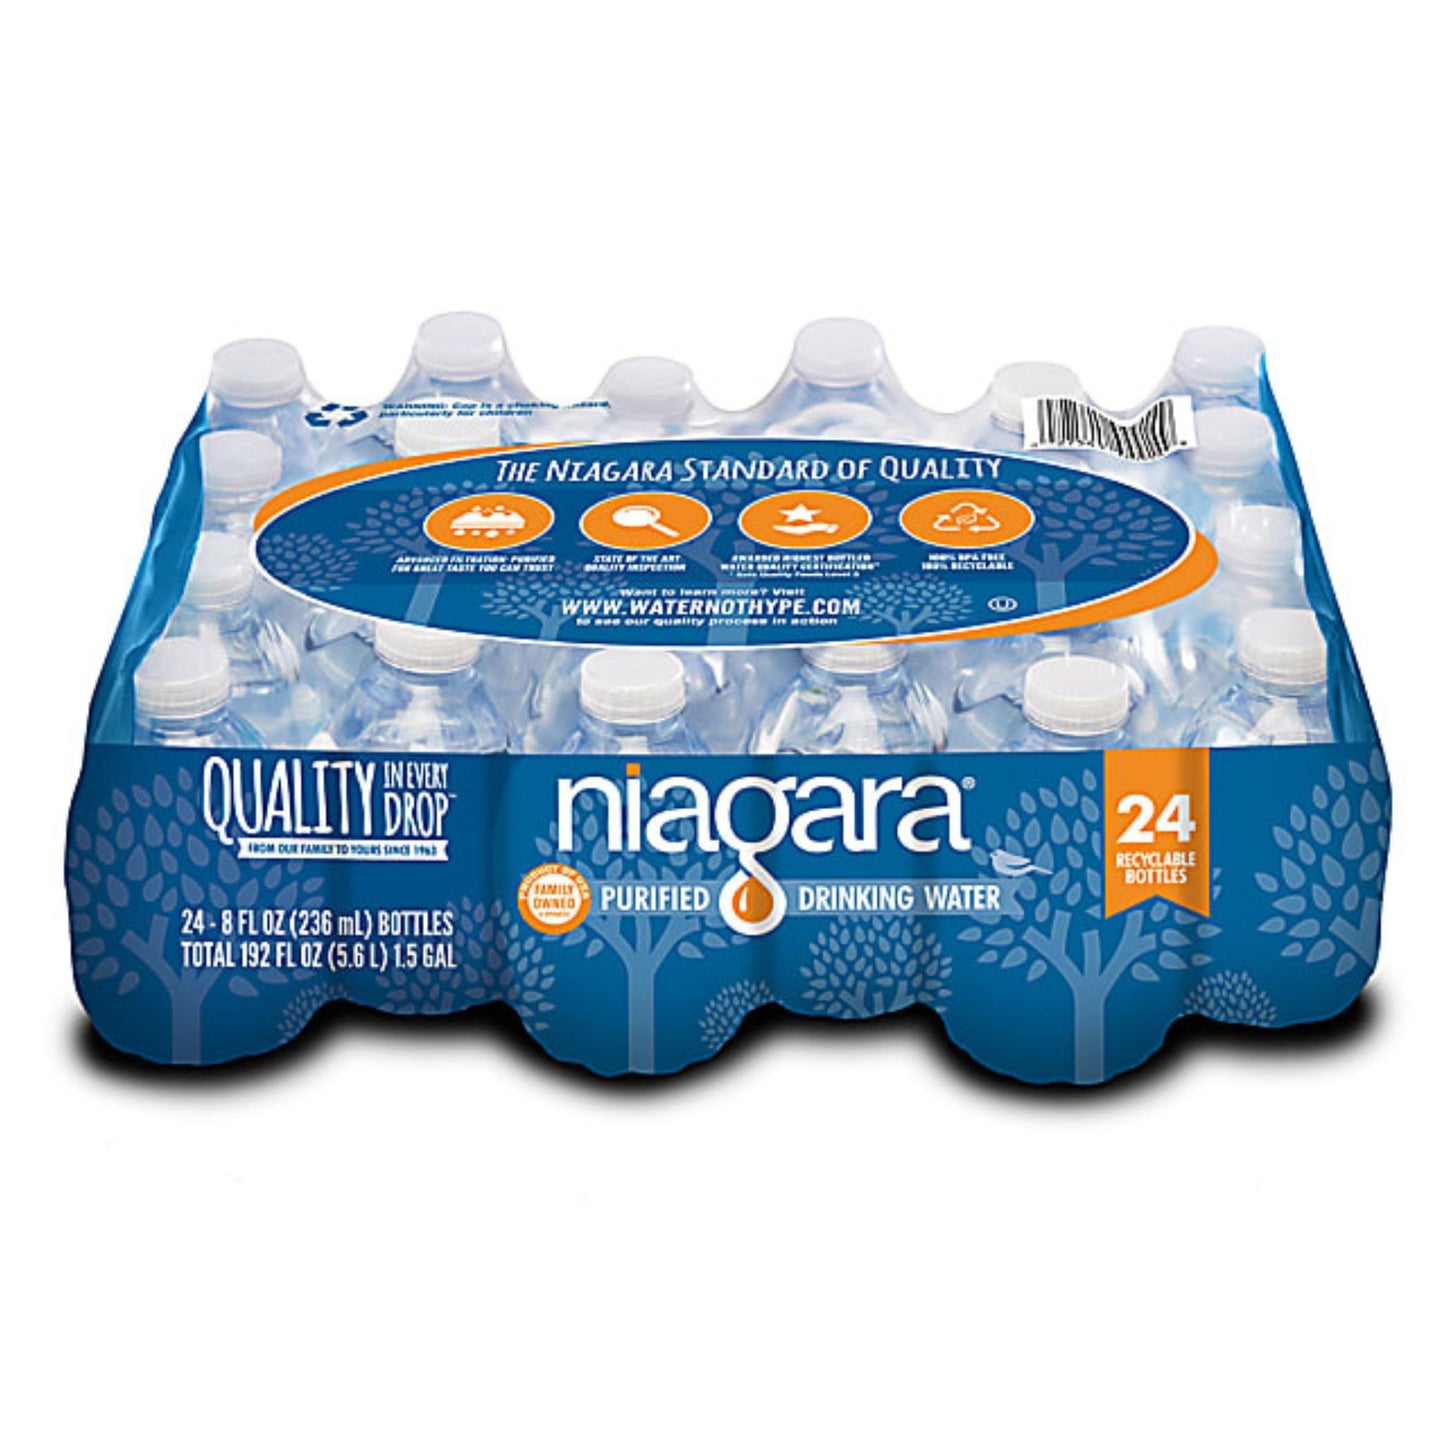 Niagara Purified Drinking Water Bottles 8 Fl Oz. Pack Of 24 Bottles